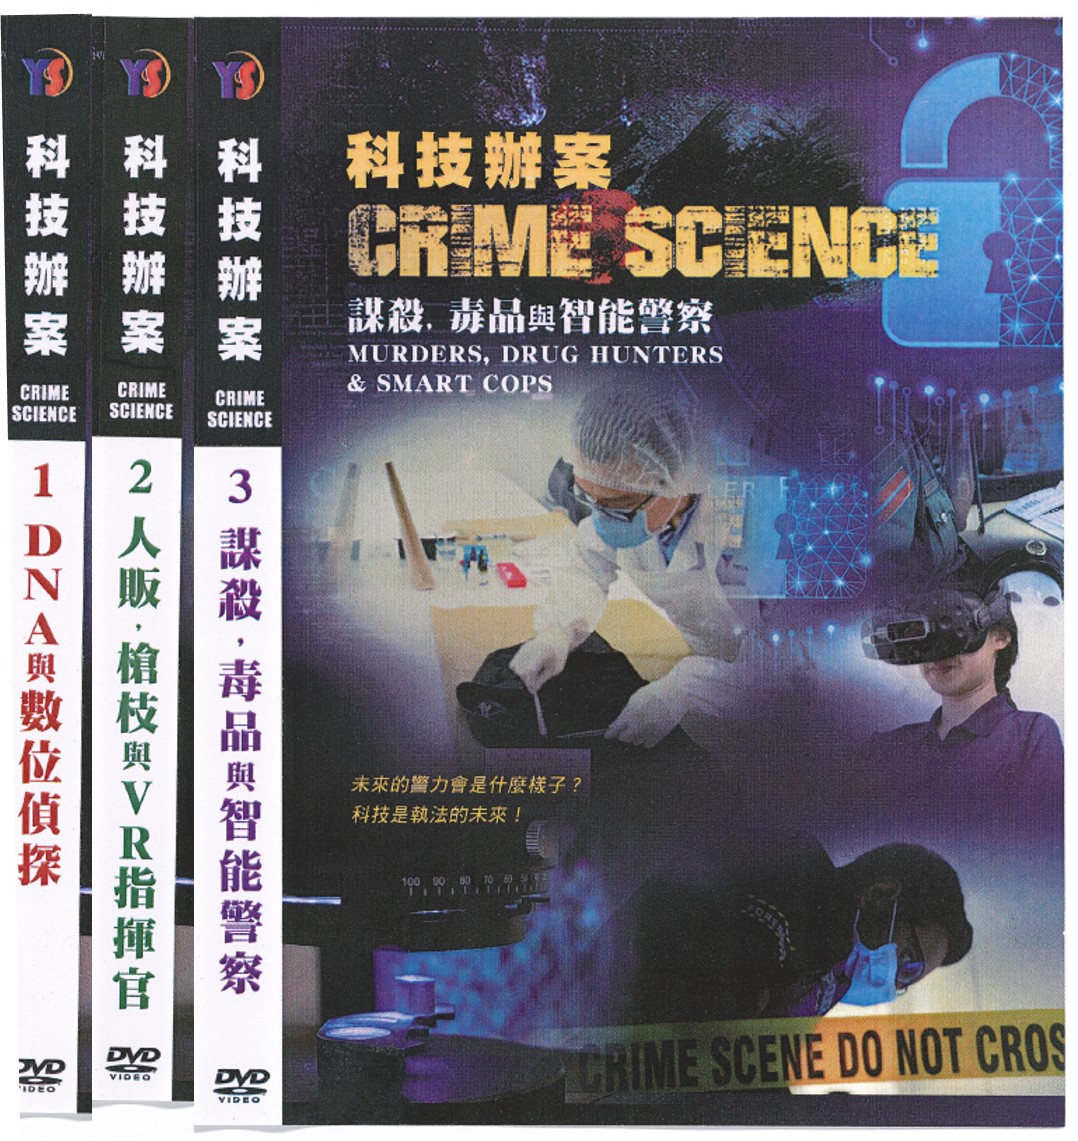 科技辦案 = Crime science